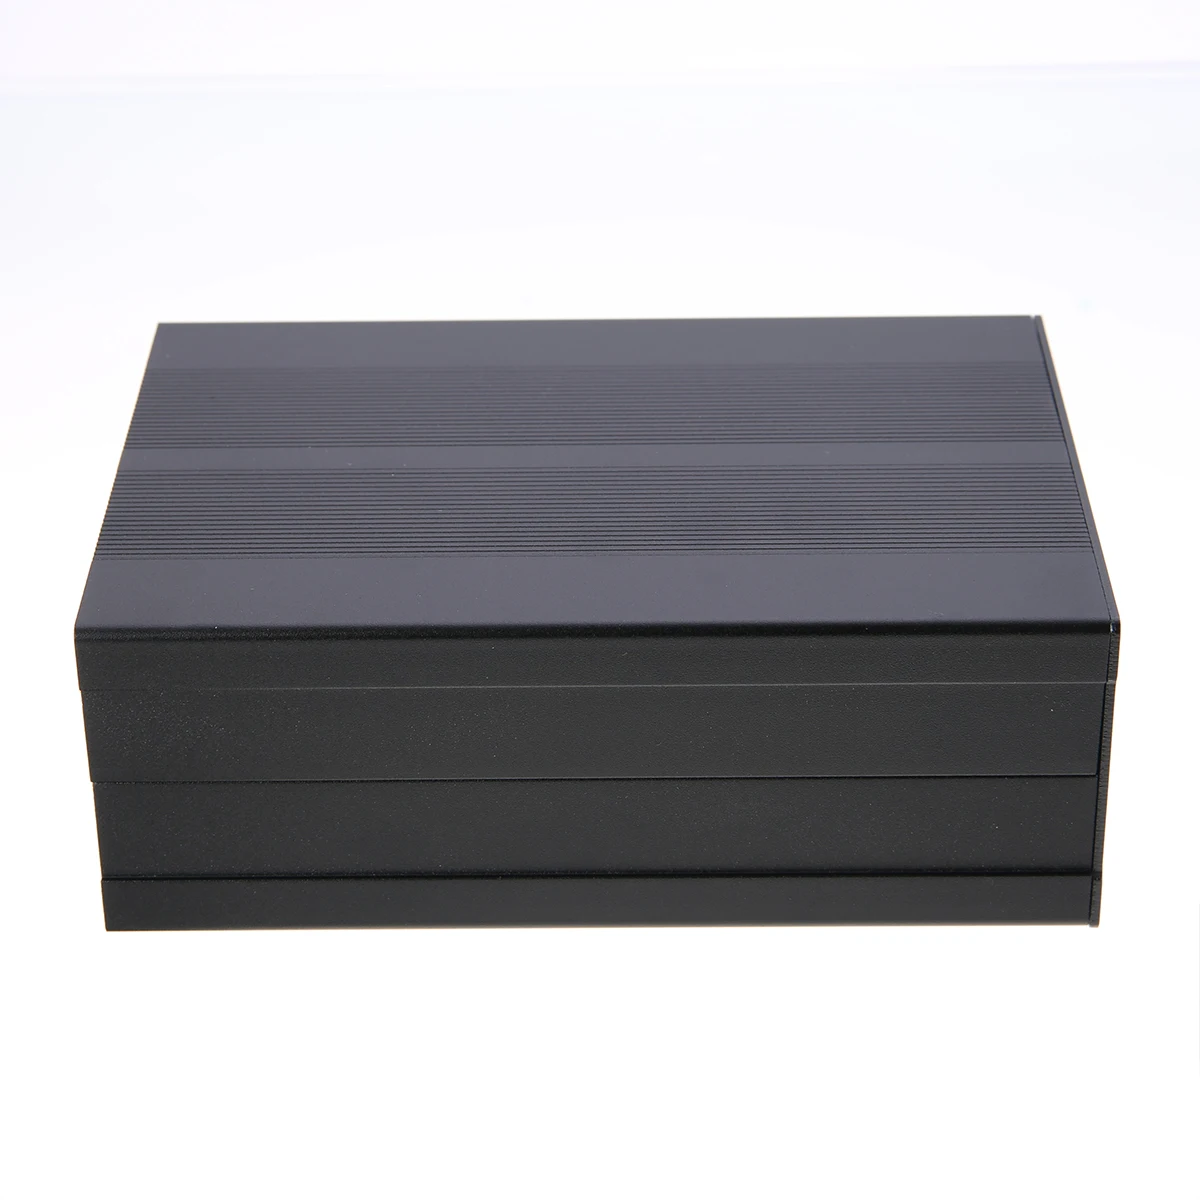 1 шт. алюминиевый корпус чехол черная печатная плата электронный ящик 150x105x55 мм для печатной платы